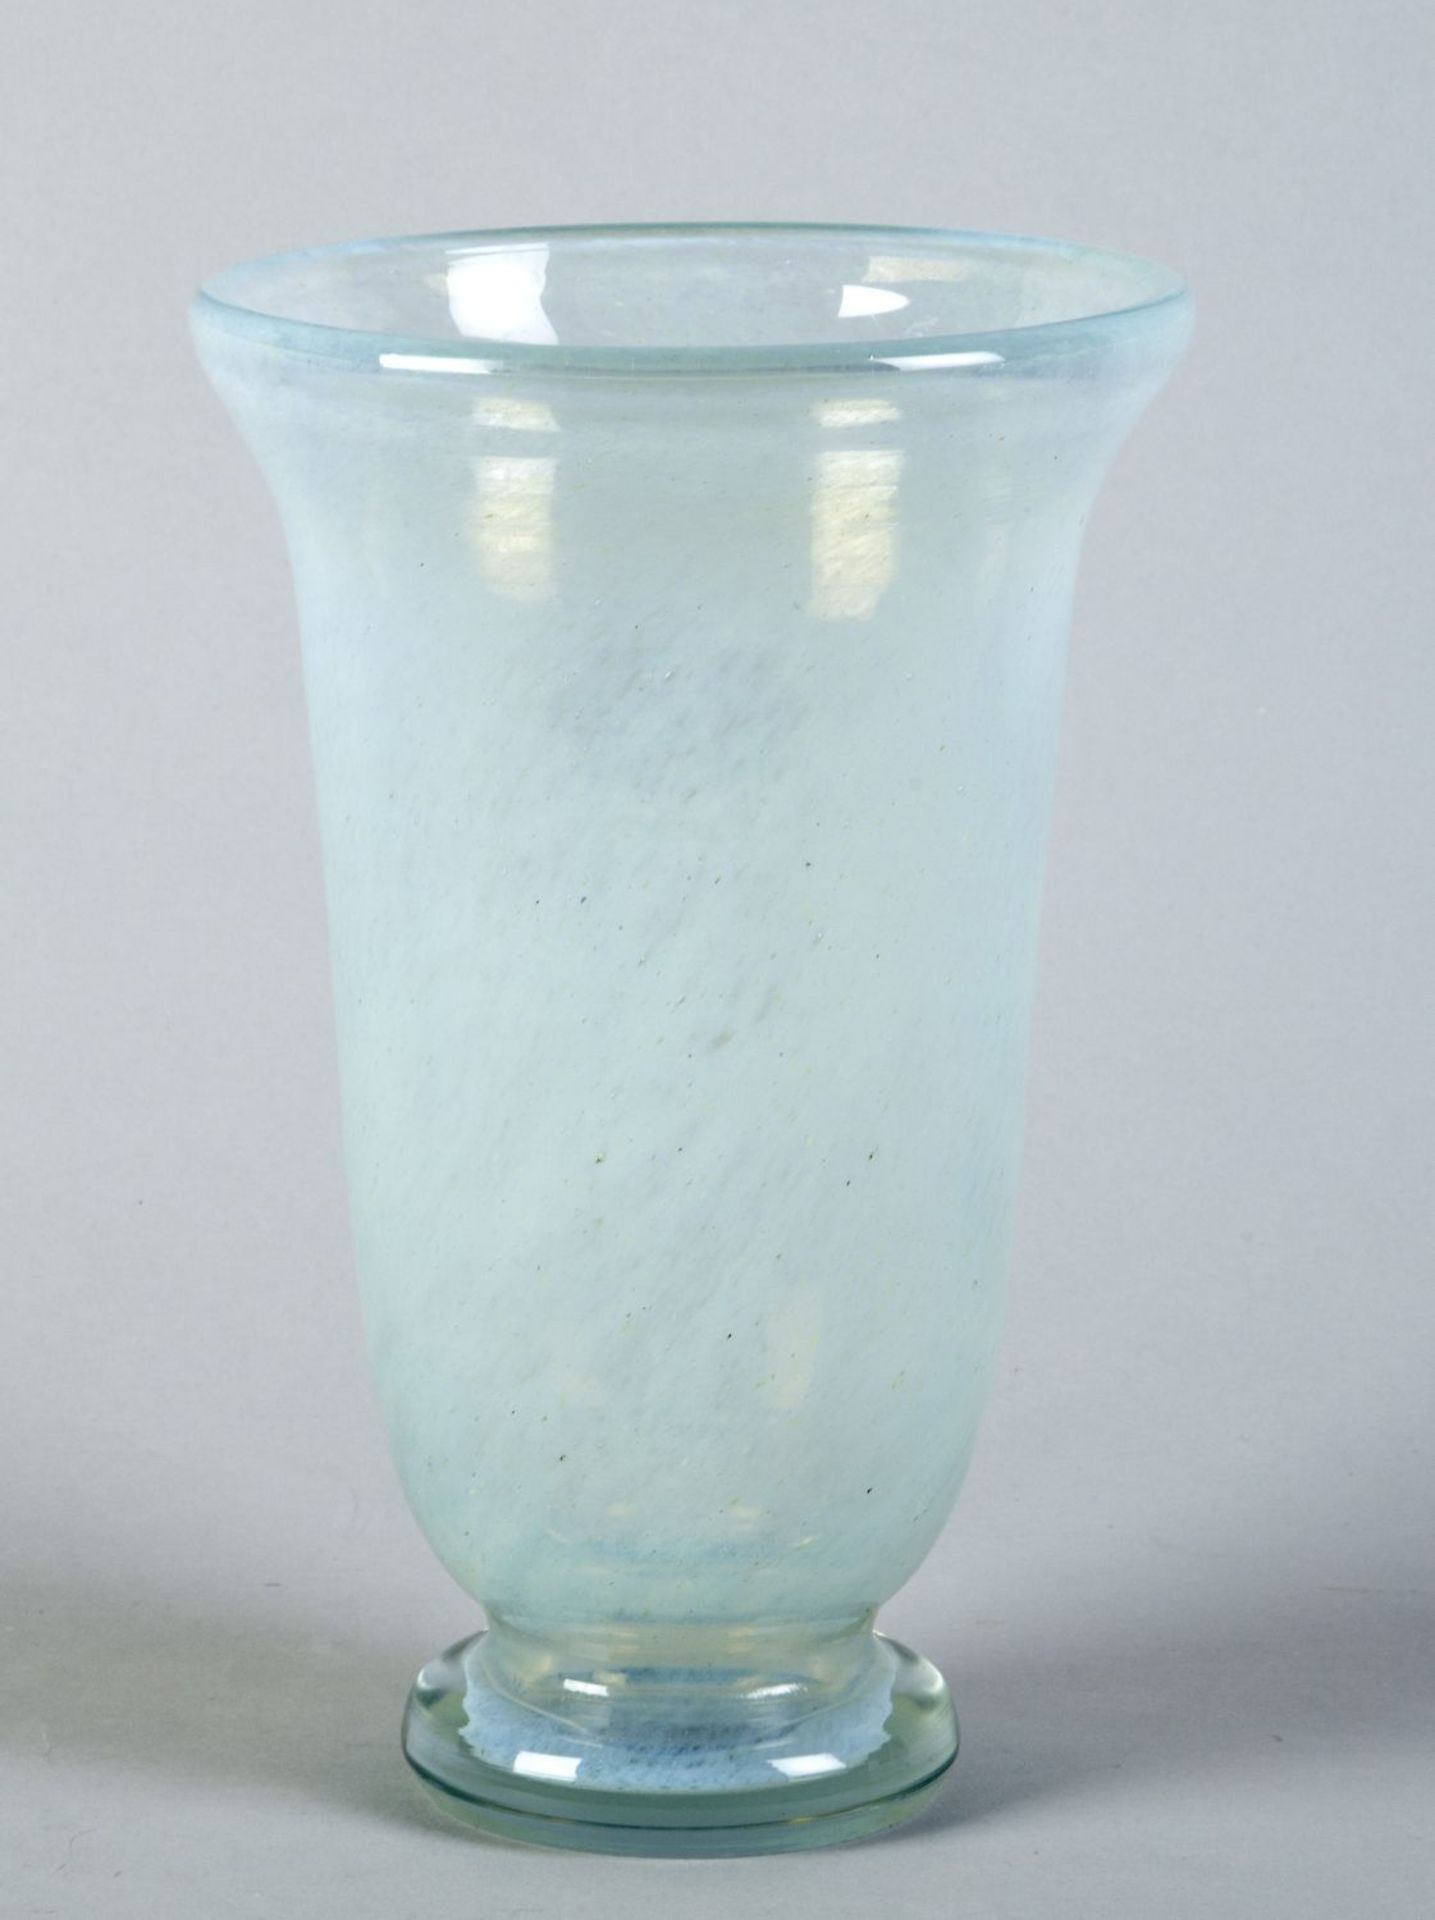 Vase Farbloses Glas mit umlaufender hellblauer Pulvereinschmelzung und Luftbläschen. H. 26,8